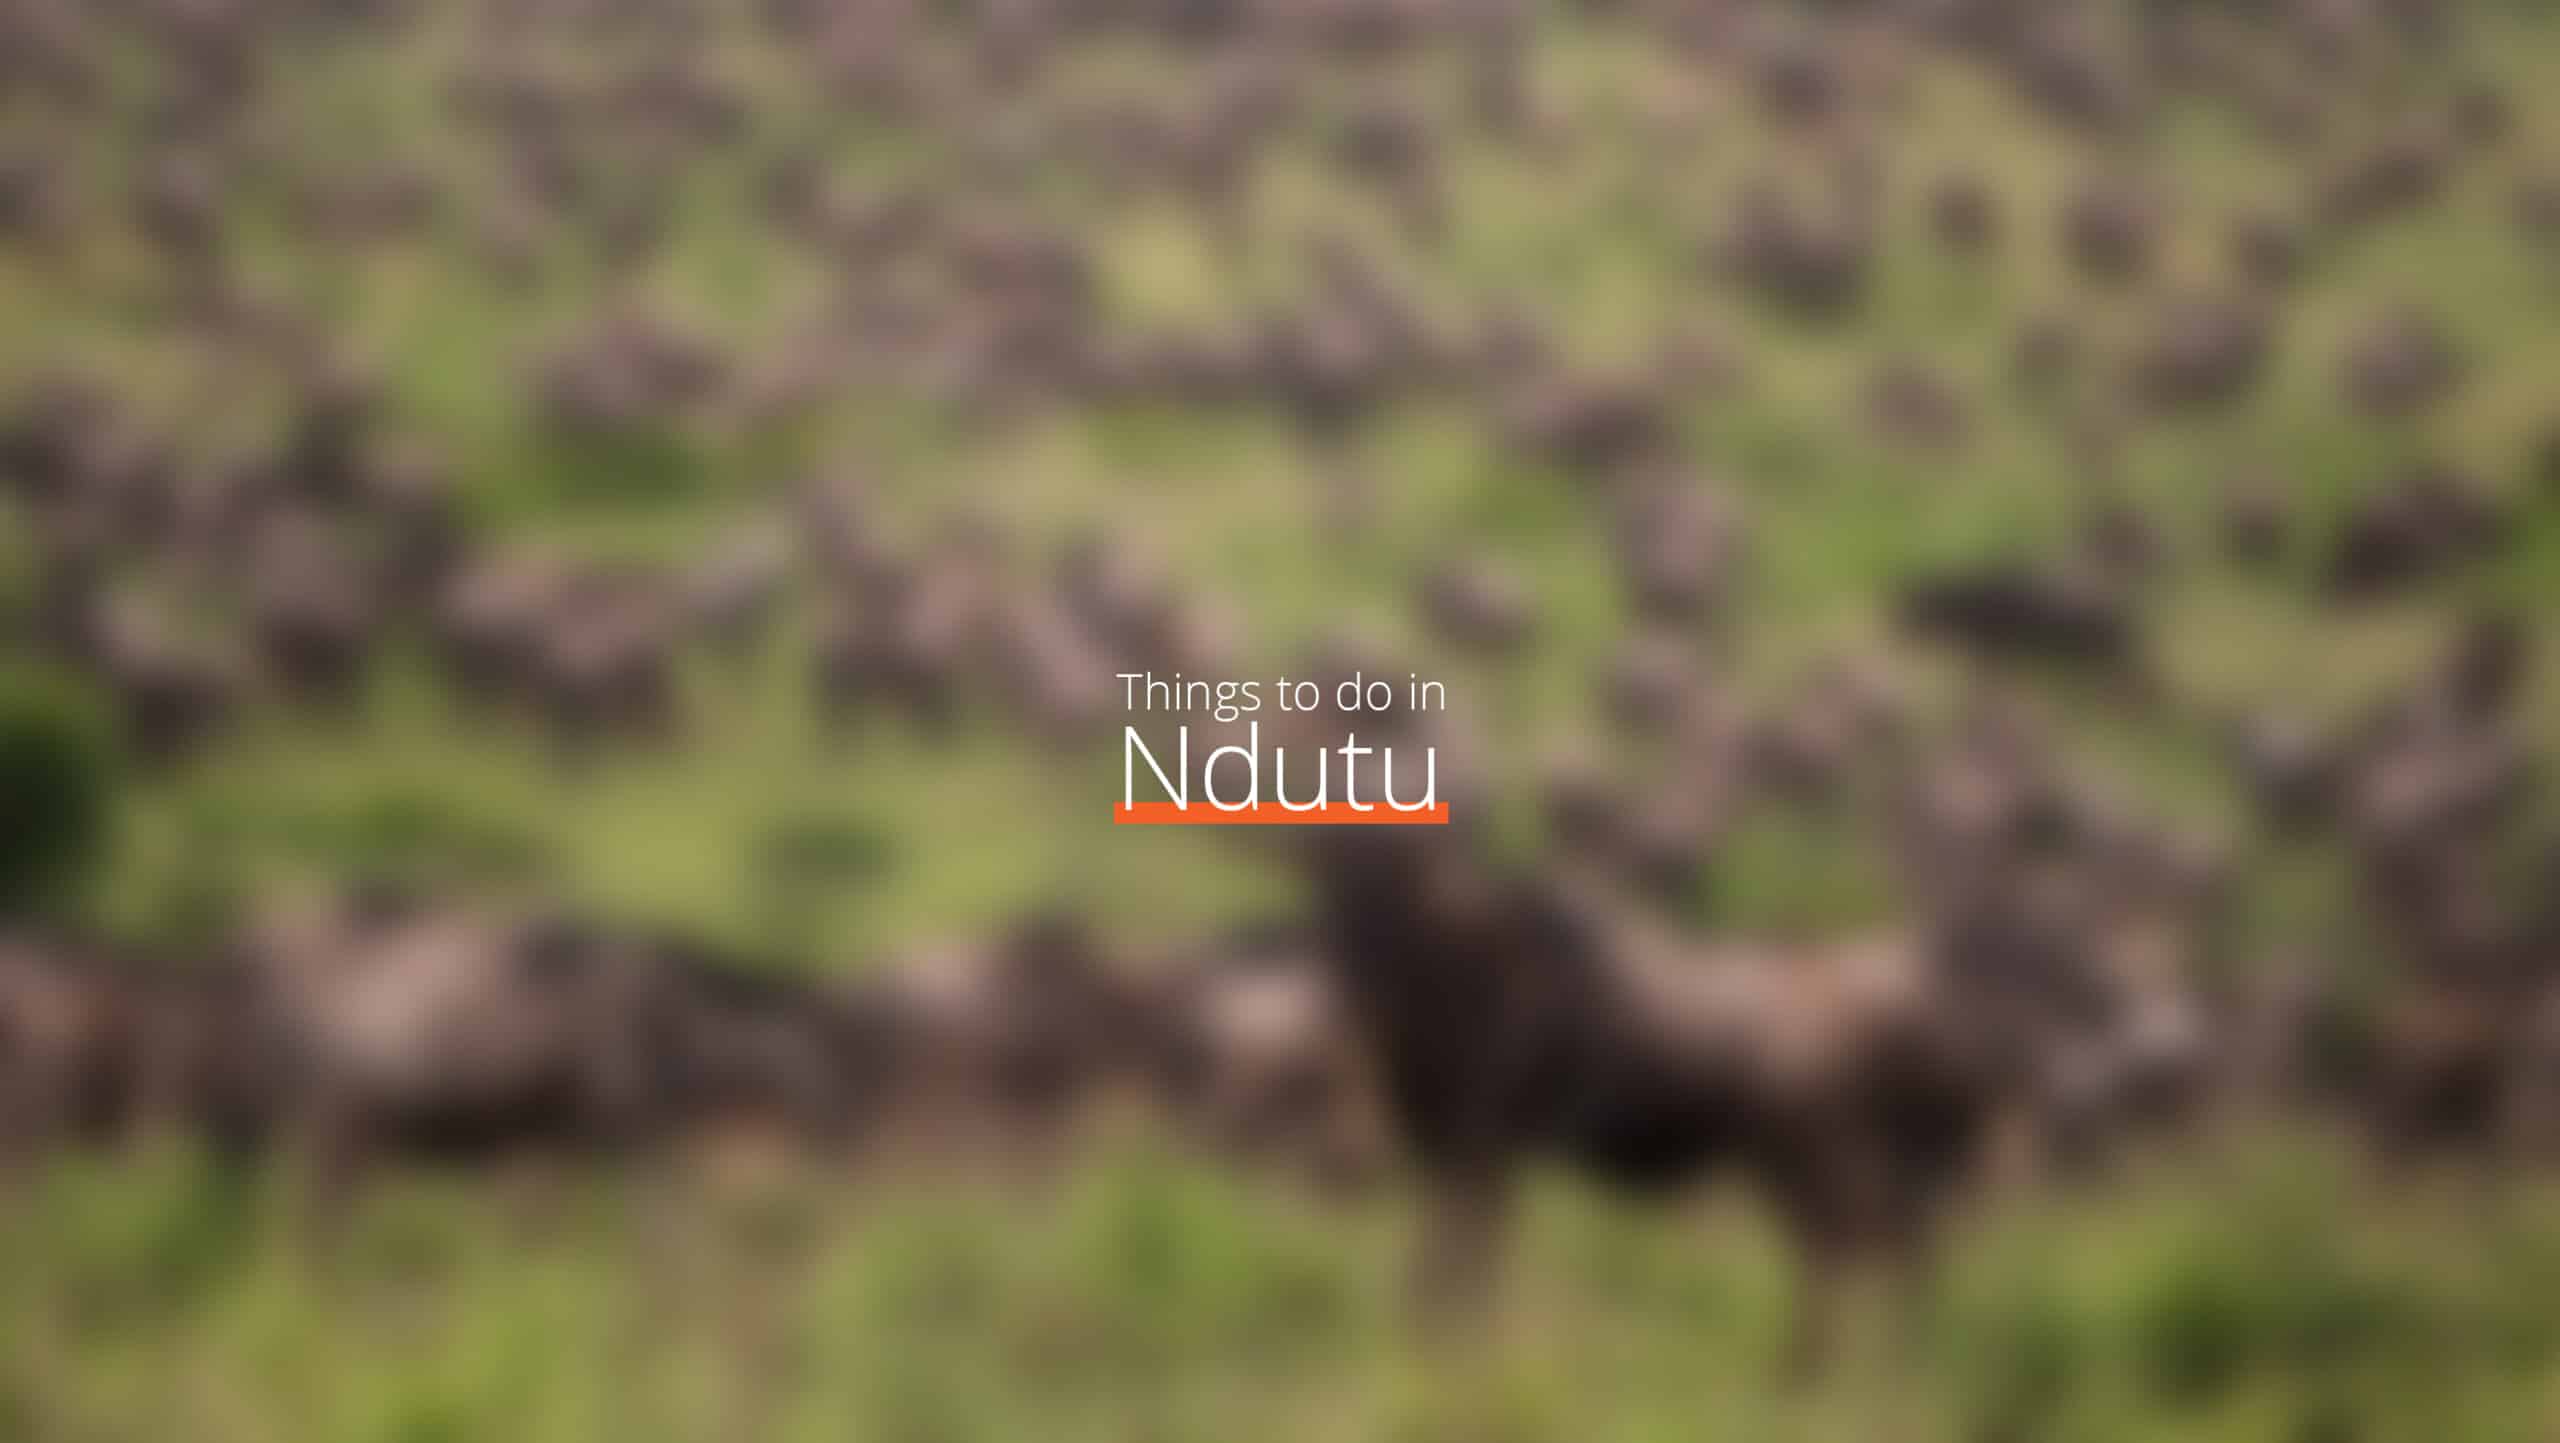 坦桑尼亚 - ndutu 缩放比例 - 5 月